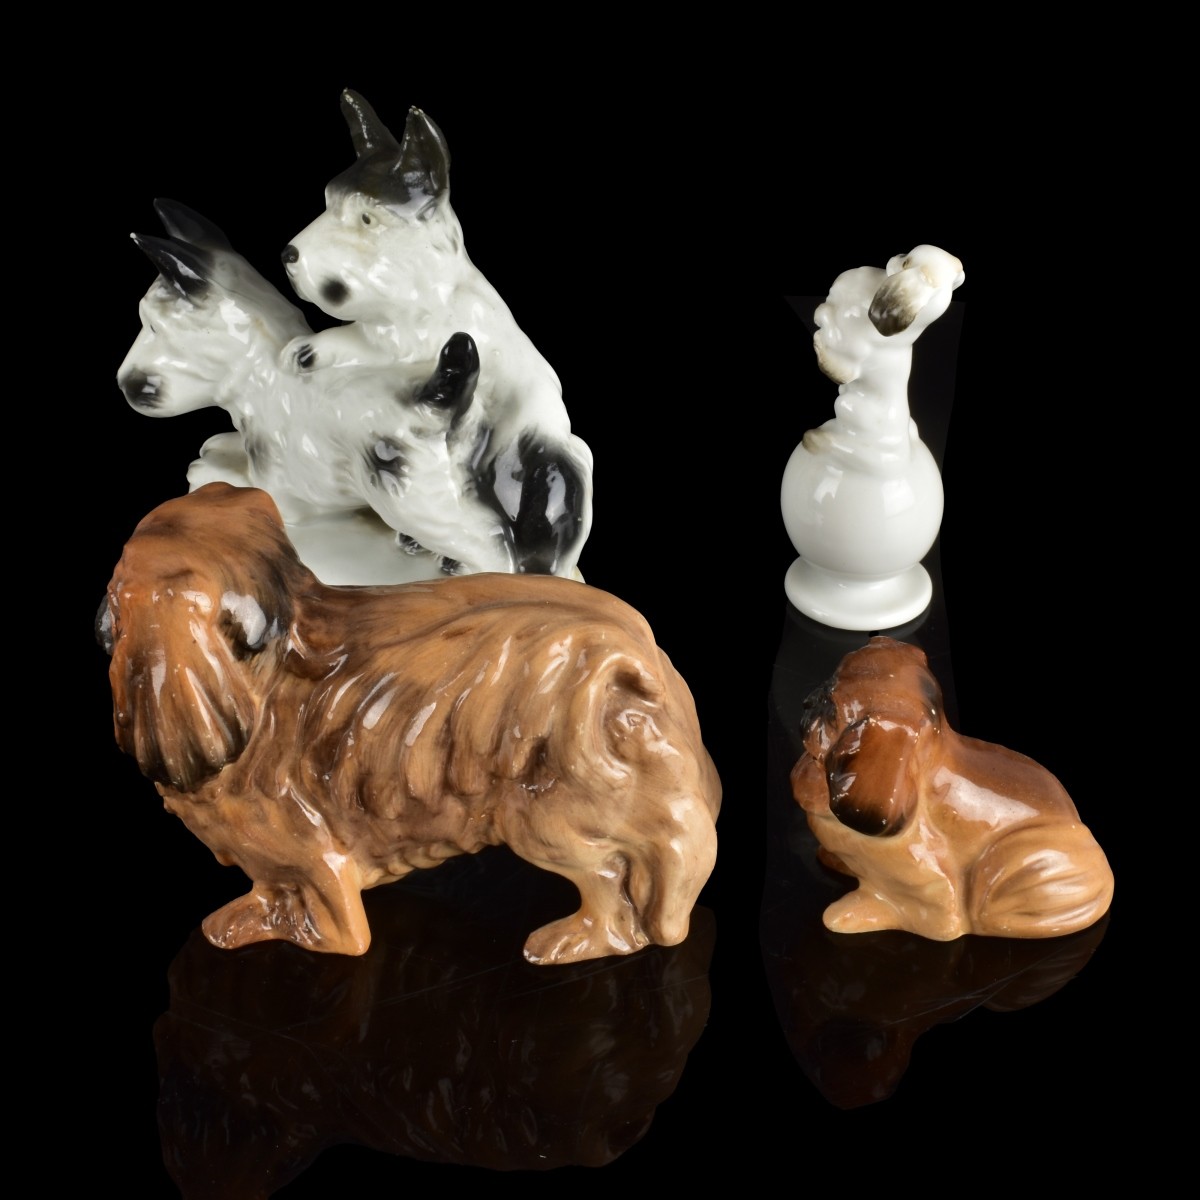 Vintage Assorted Porcelain Figurines